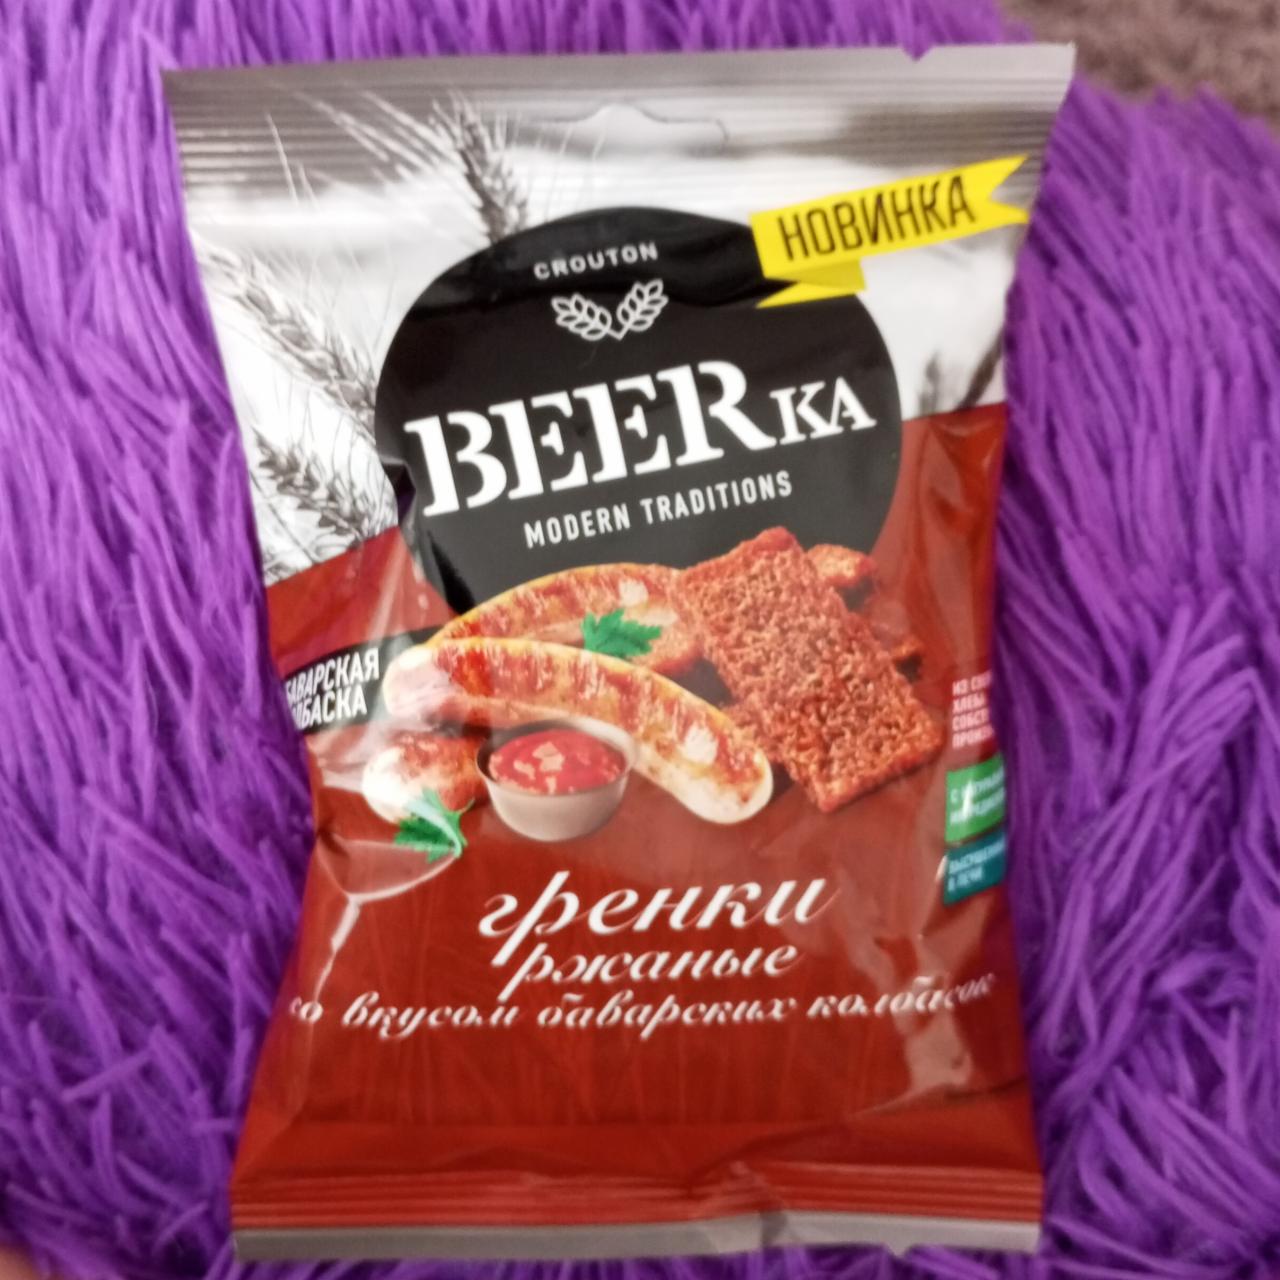 Фото - гренки ржаные со вкусом баварских колбасок BEERka